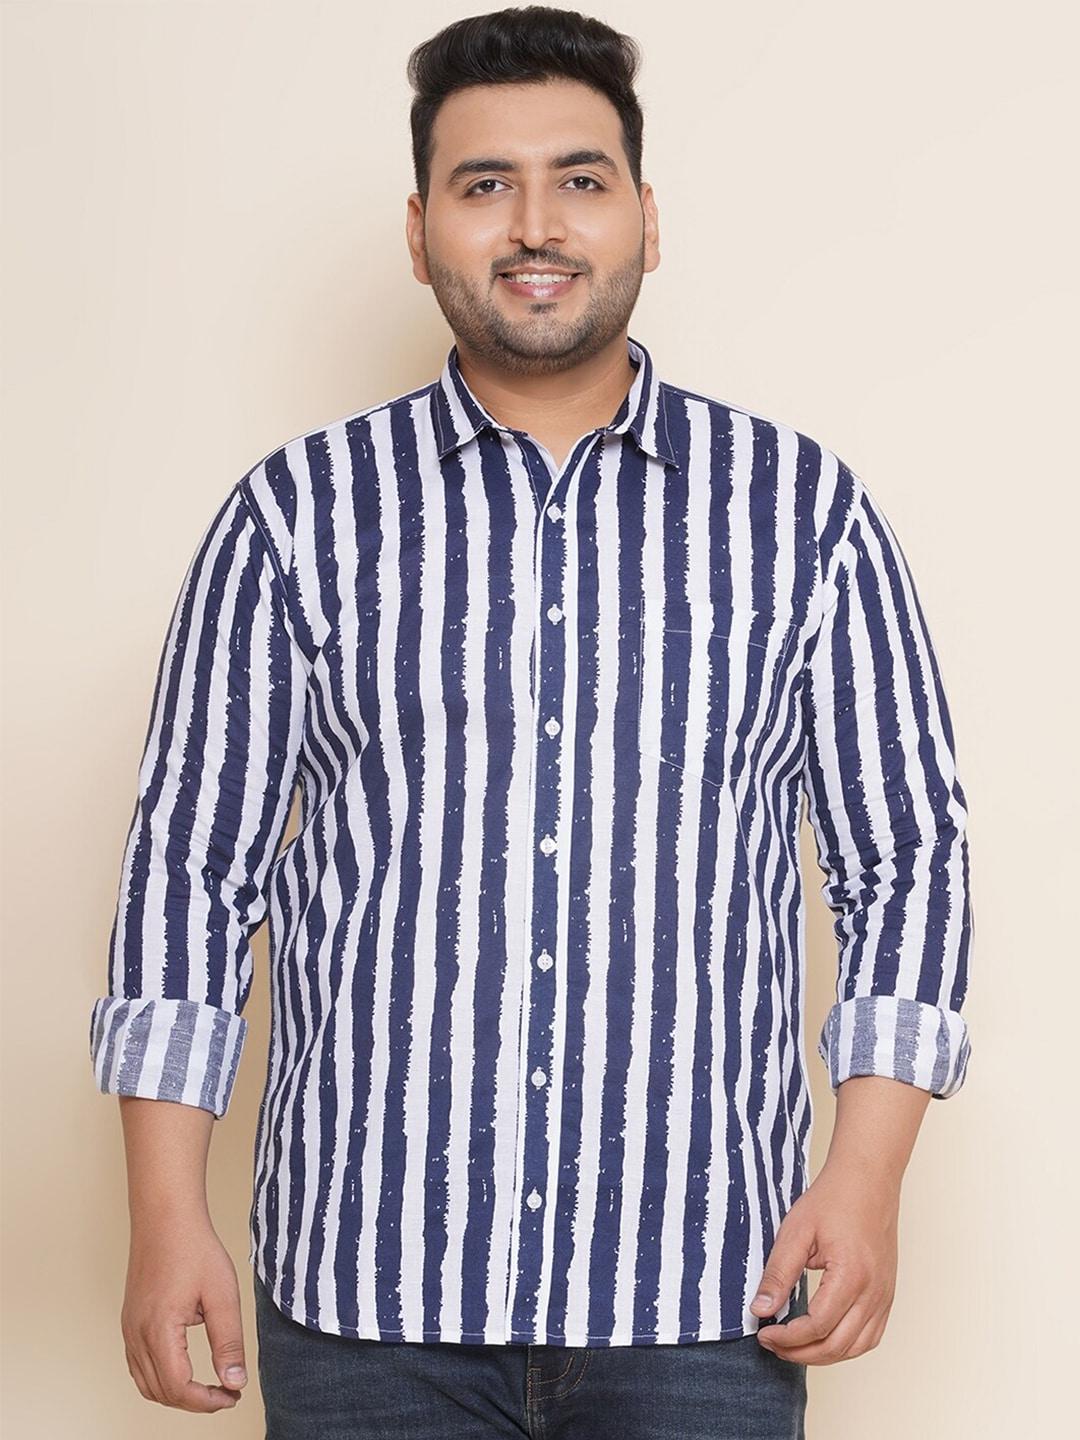 john pride plus size vertical striped spread collar pure cotton casual shirt